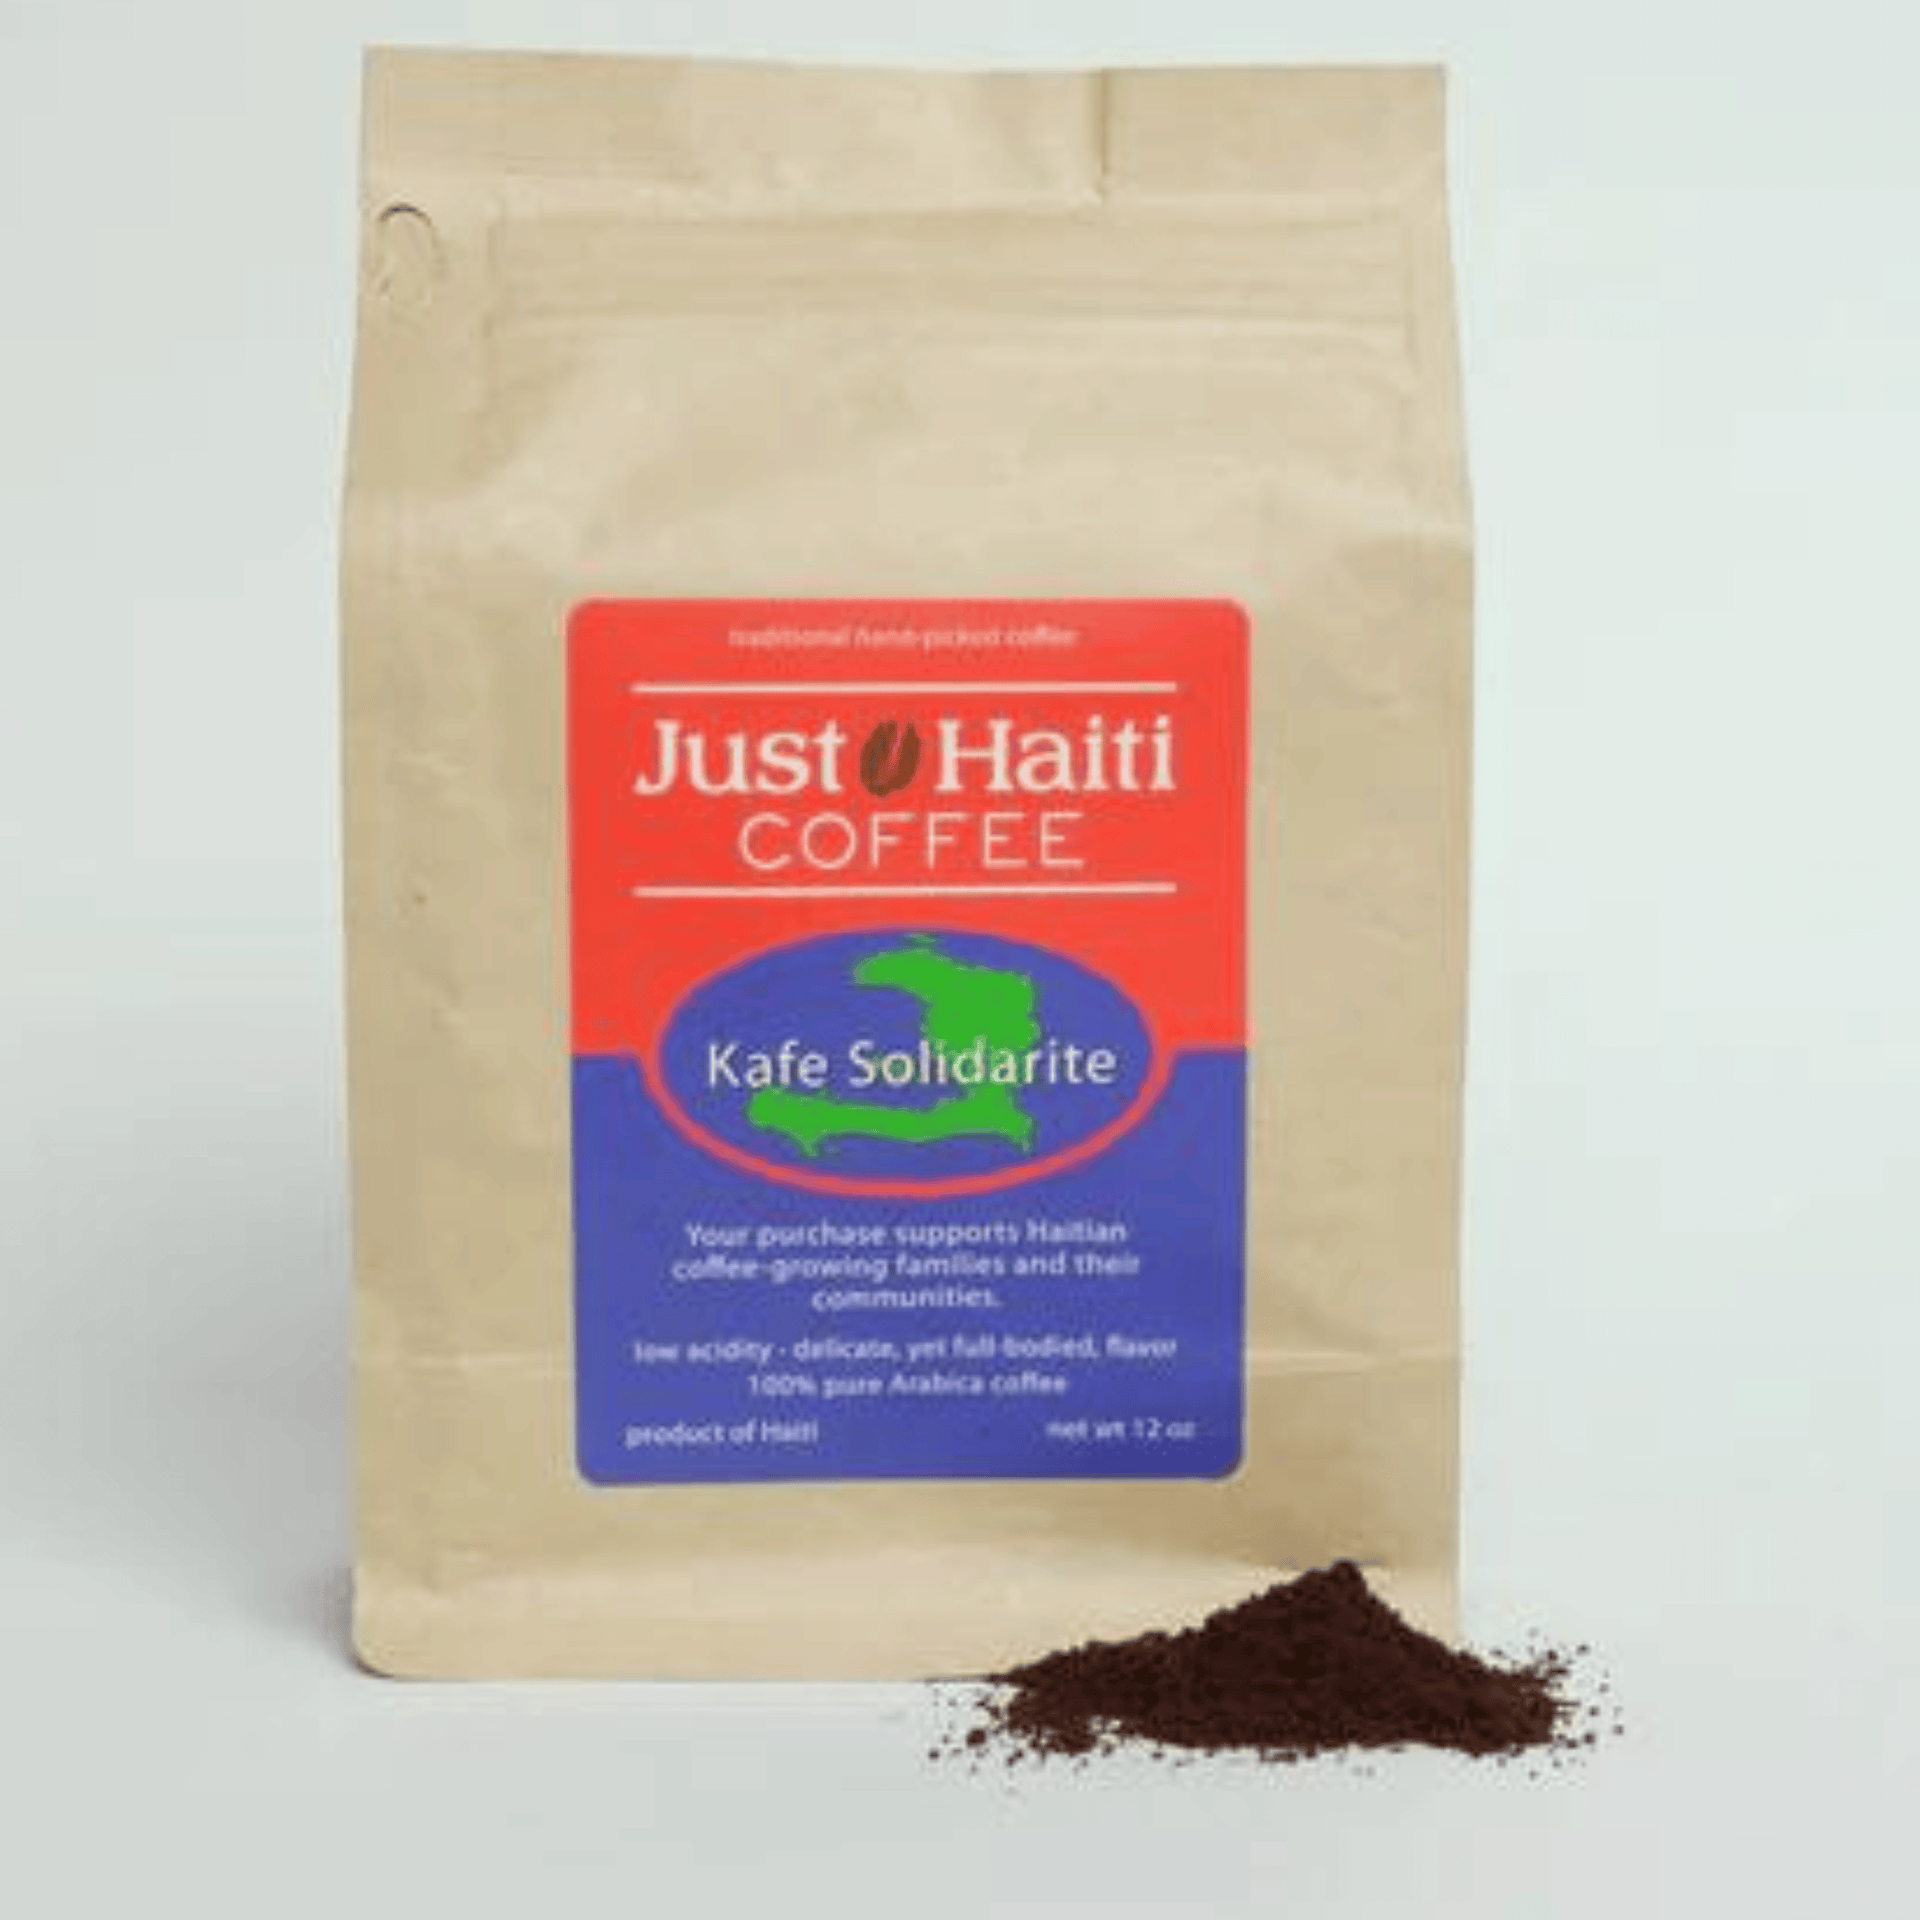 Just Haiti Coffee